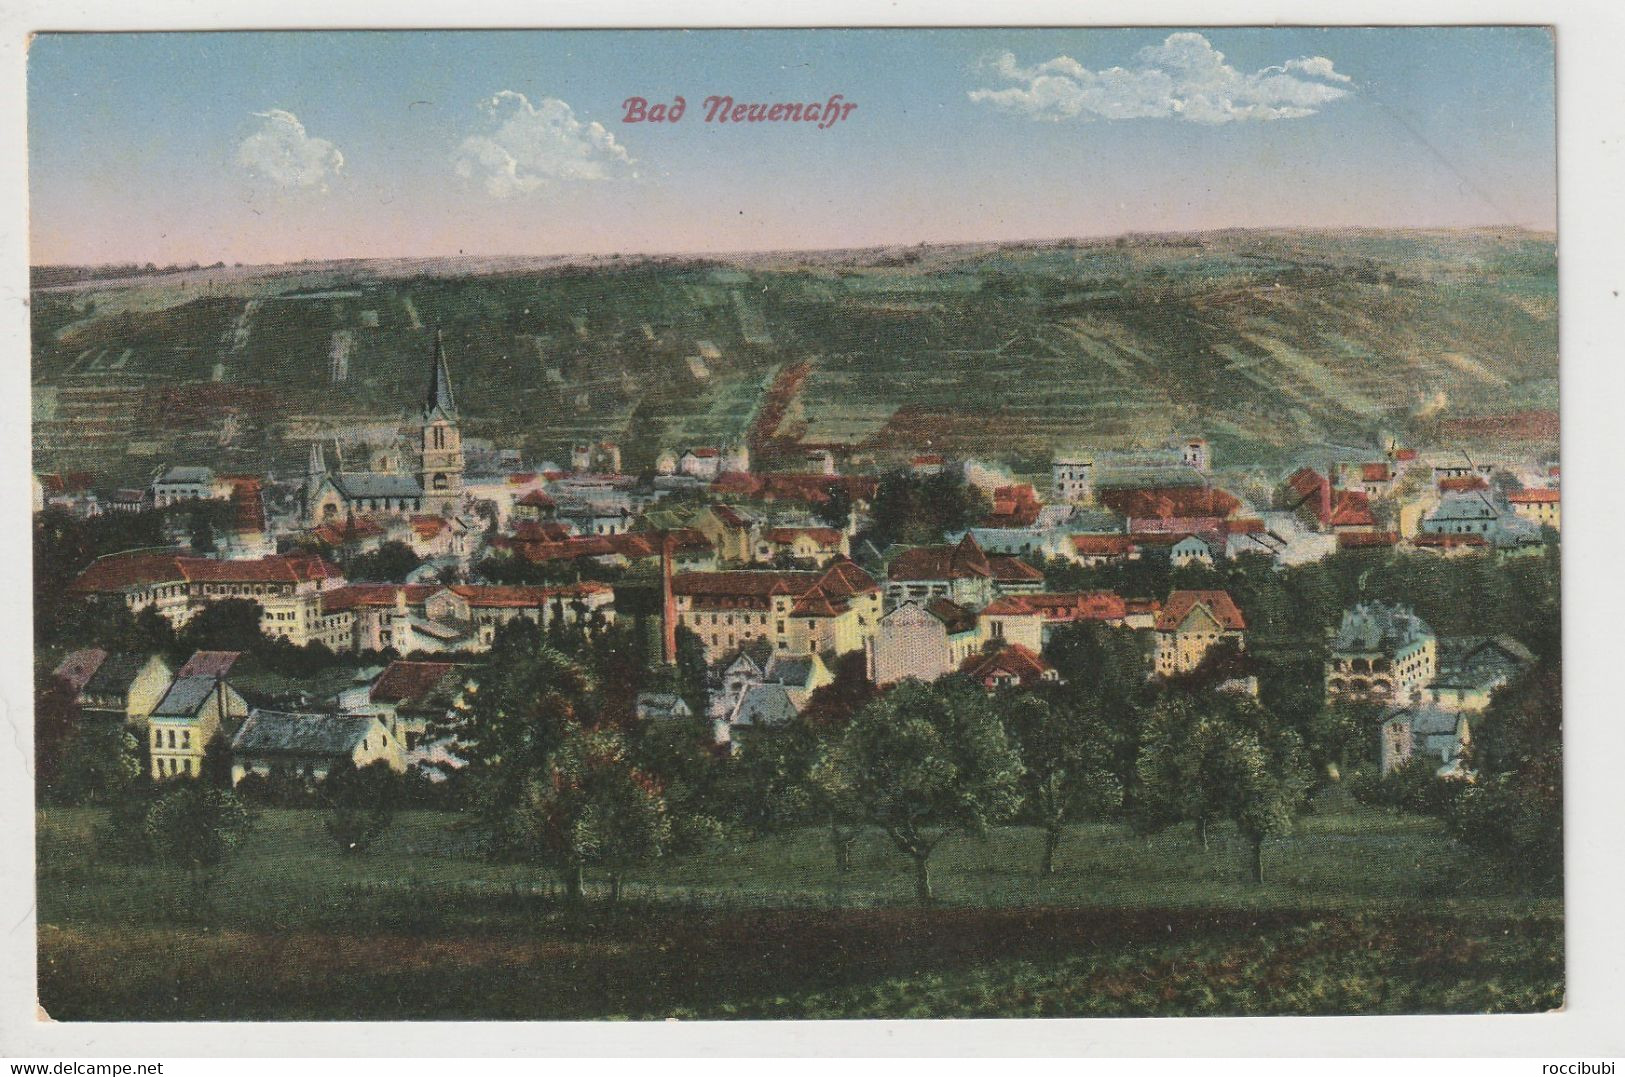 Bad Neuenahr, Rheinland-Pfalz - Bad Neuenahr-Ahrweiler